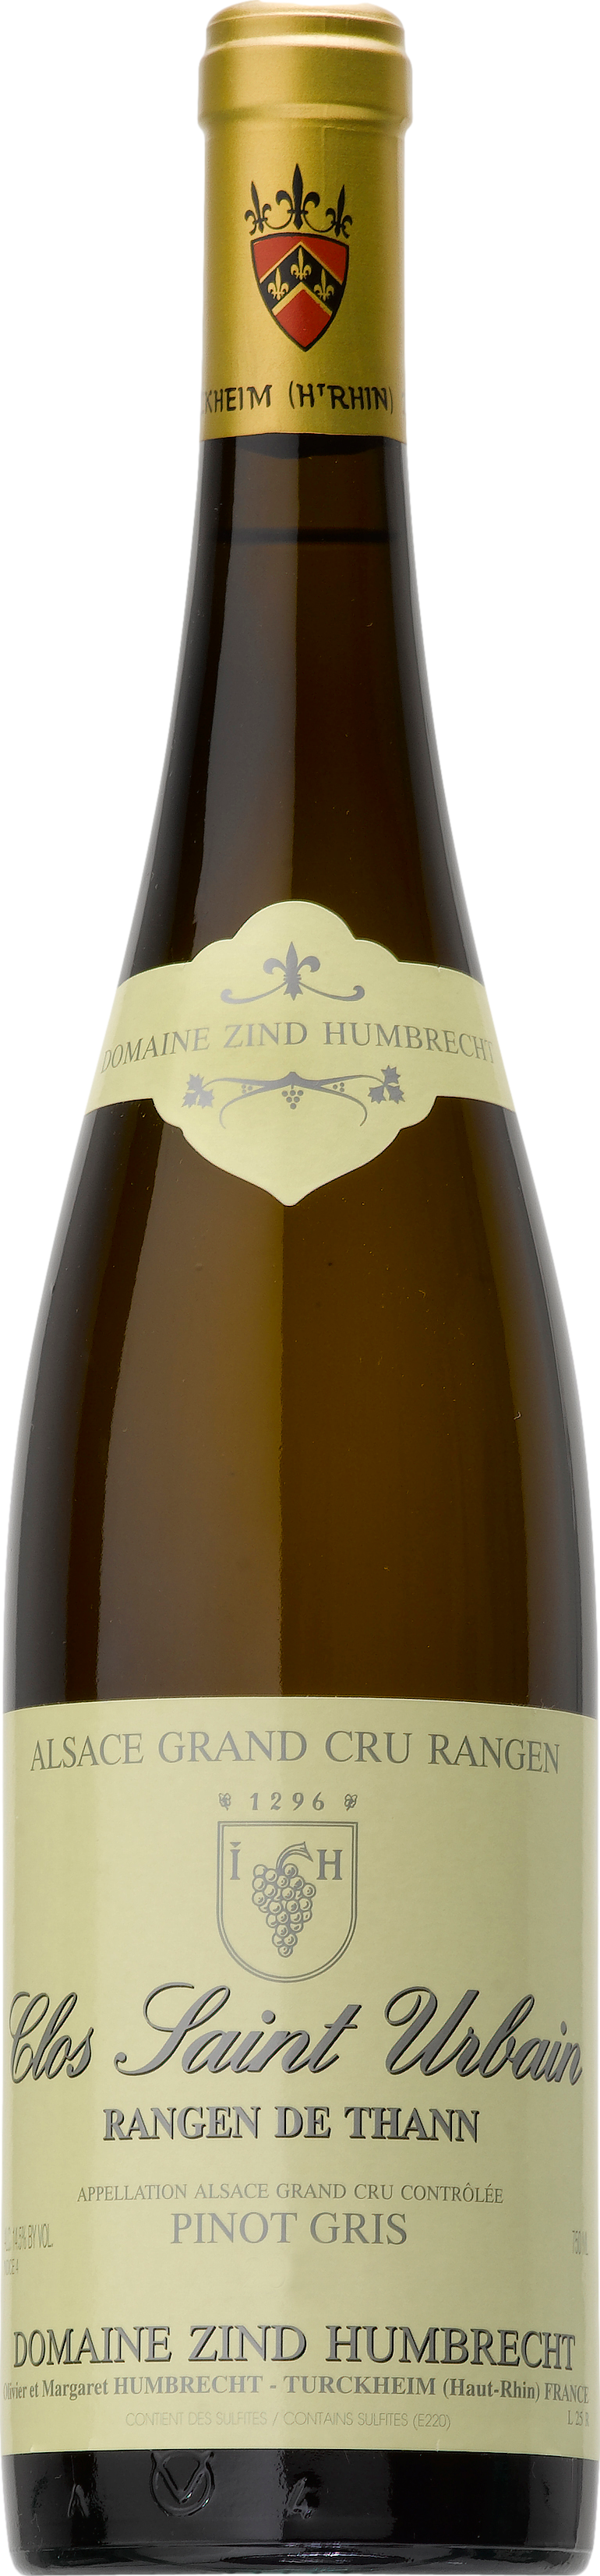 2016 2 günstig Kaufen-Domaine Zind-Humbrecht Pinot Gris Grand Cru Rangen de Thann Clos Saint Urbain 2016. Domaine Zind-Humbrecht Pinot Gris Grand Cru Rangen de Thann Clos Saint Urbain 2016 . 